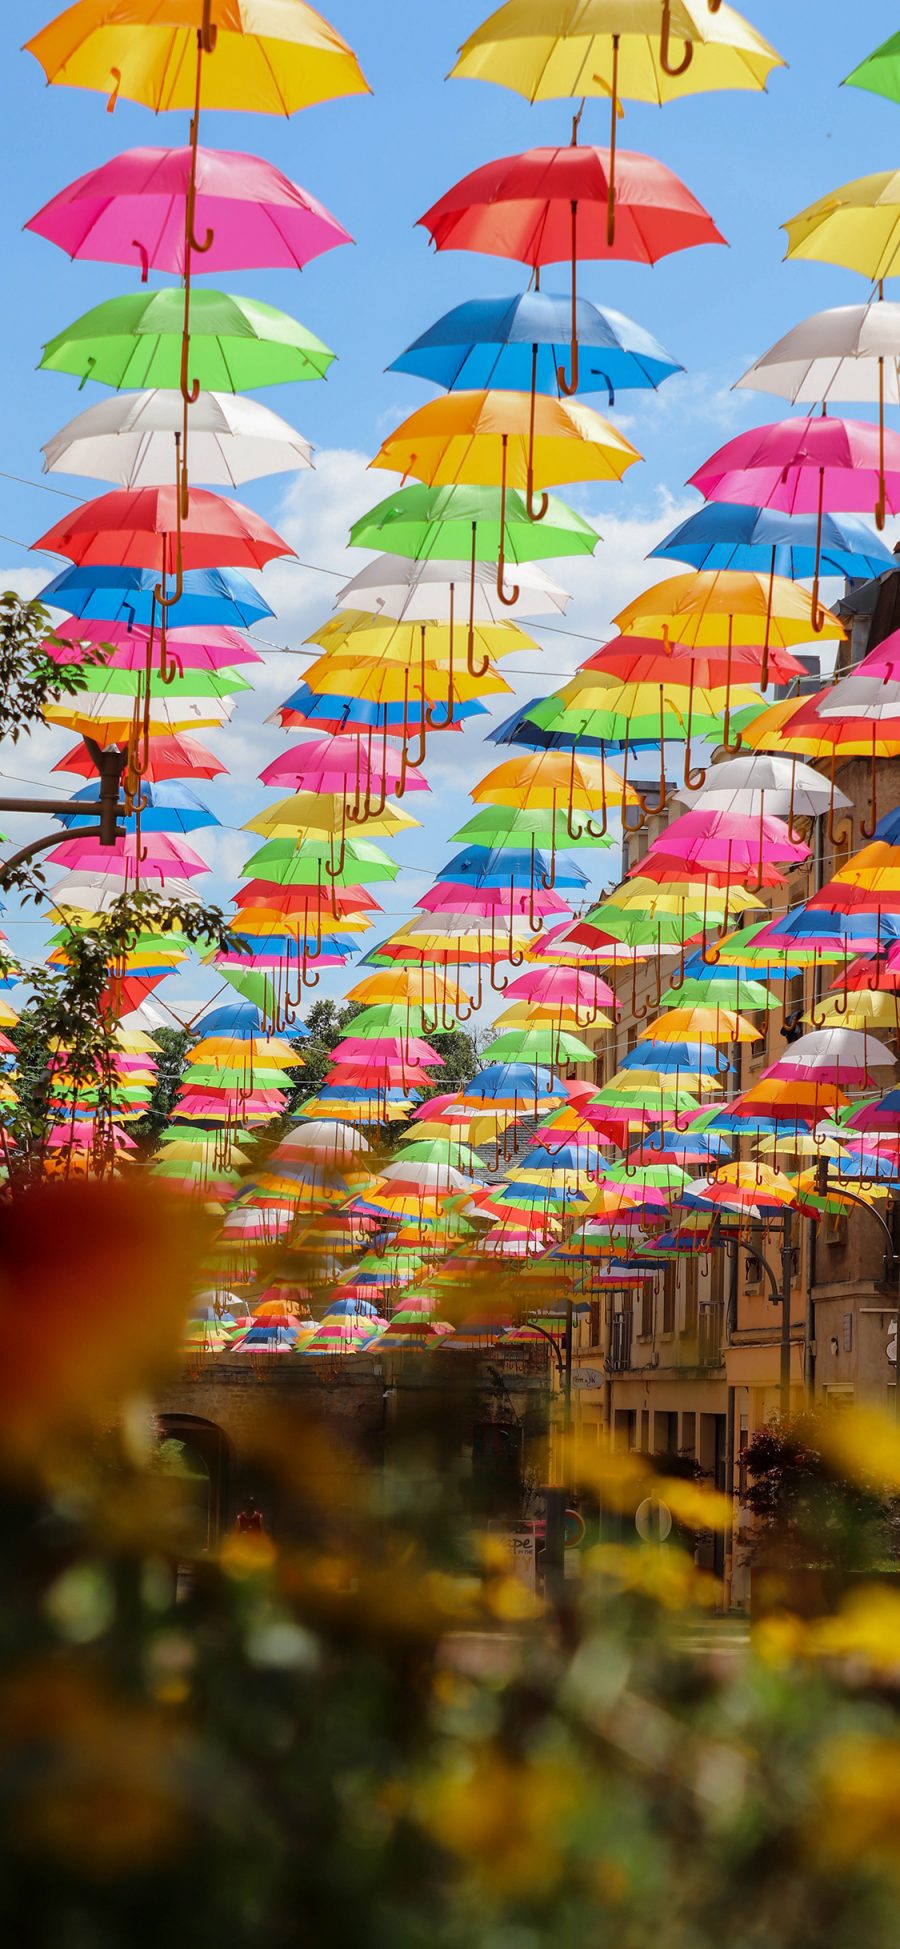 [2436×1125]雨伞 色彩 悬空 观赏 苹果手机壁纸图片